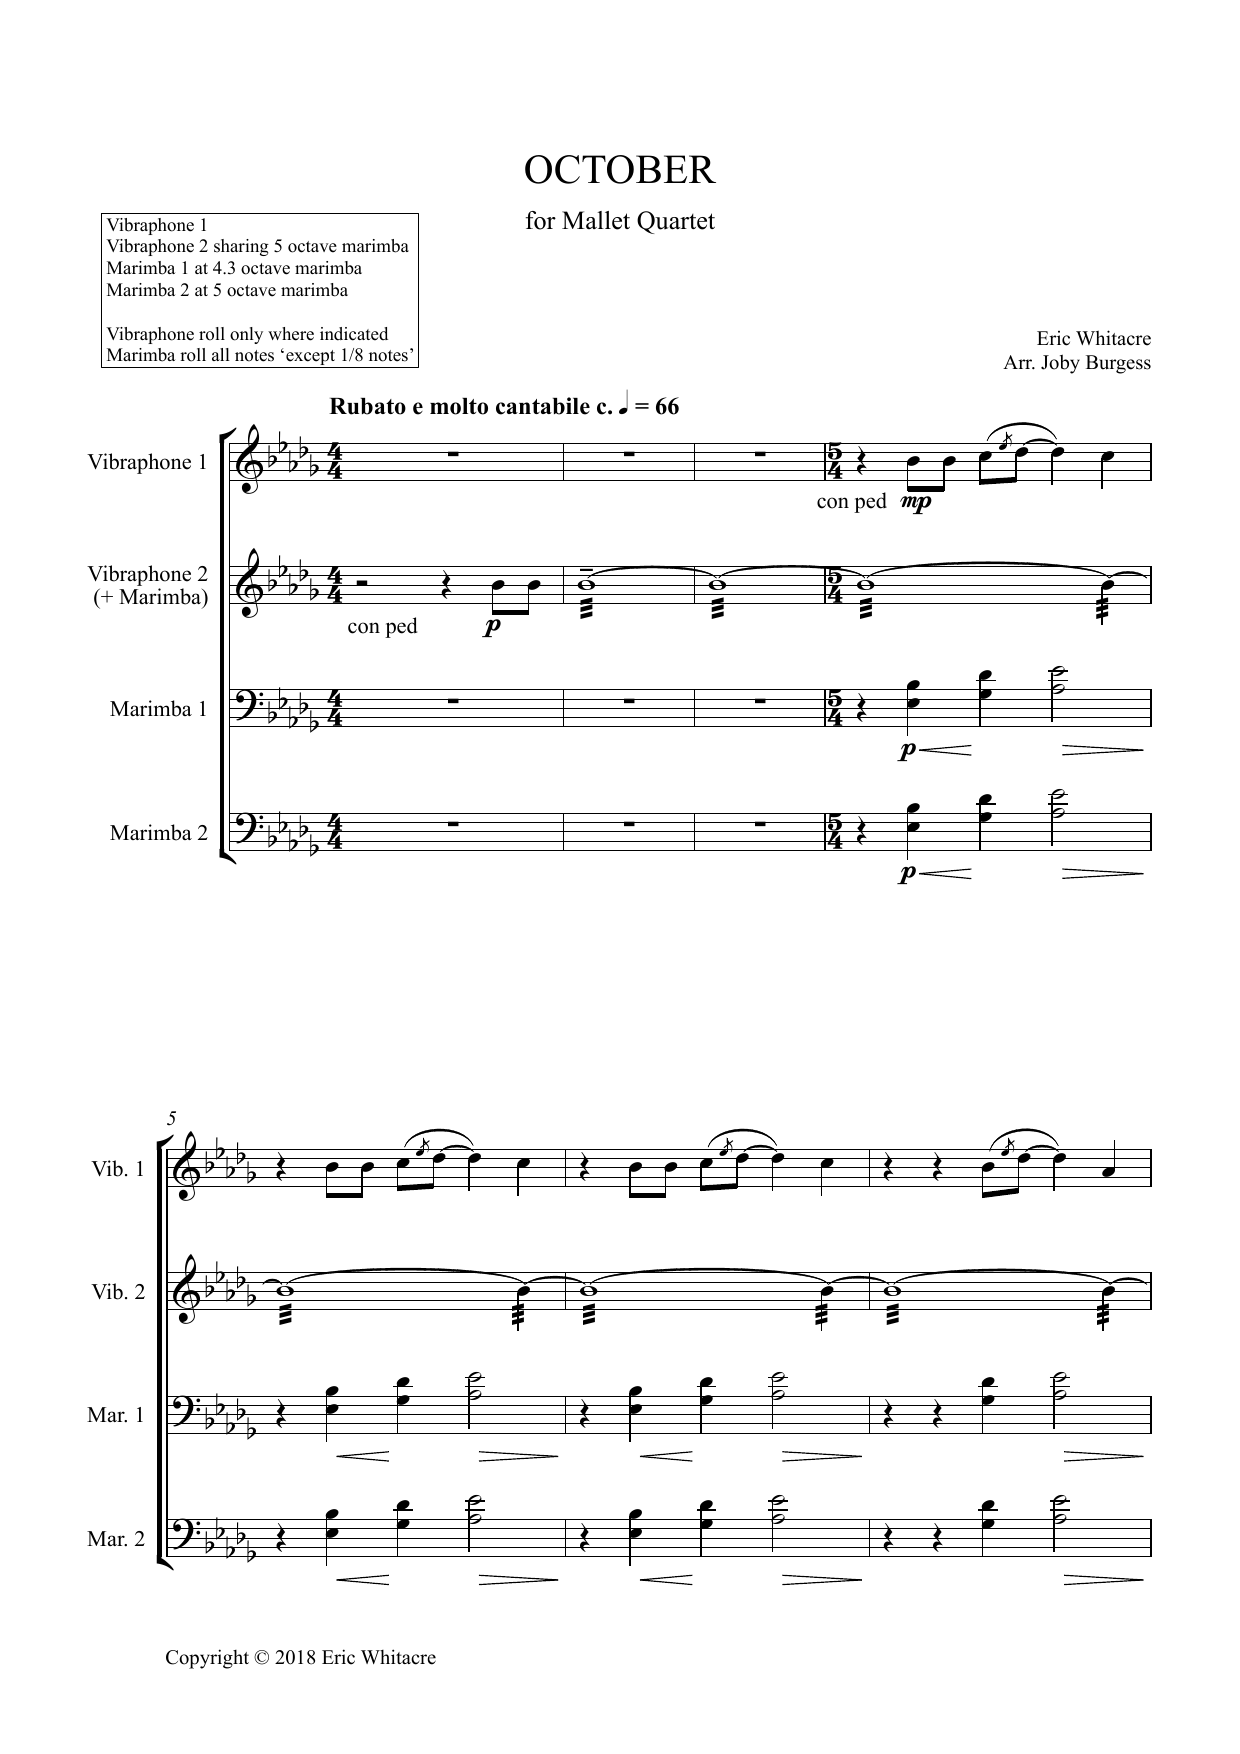 October (Alleluia) for Mallet Quartet (arr. Joby Burgess) - Full Score (Percussion Ensemble) von Eric Whitacre